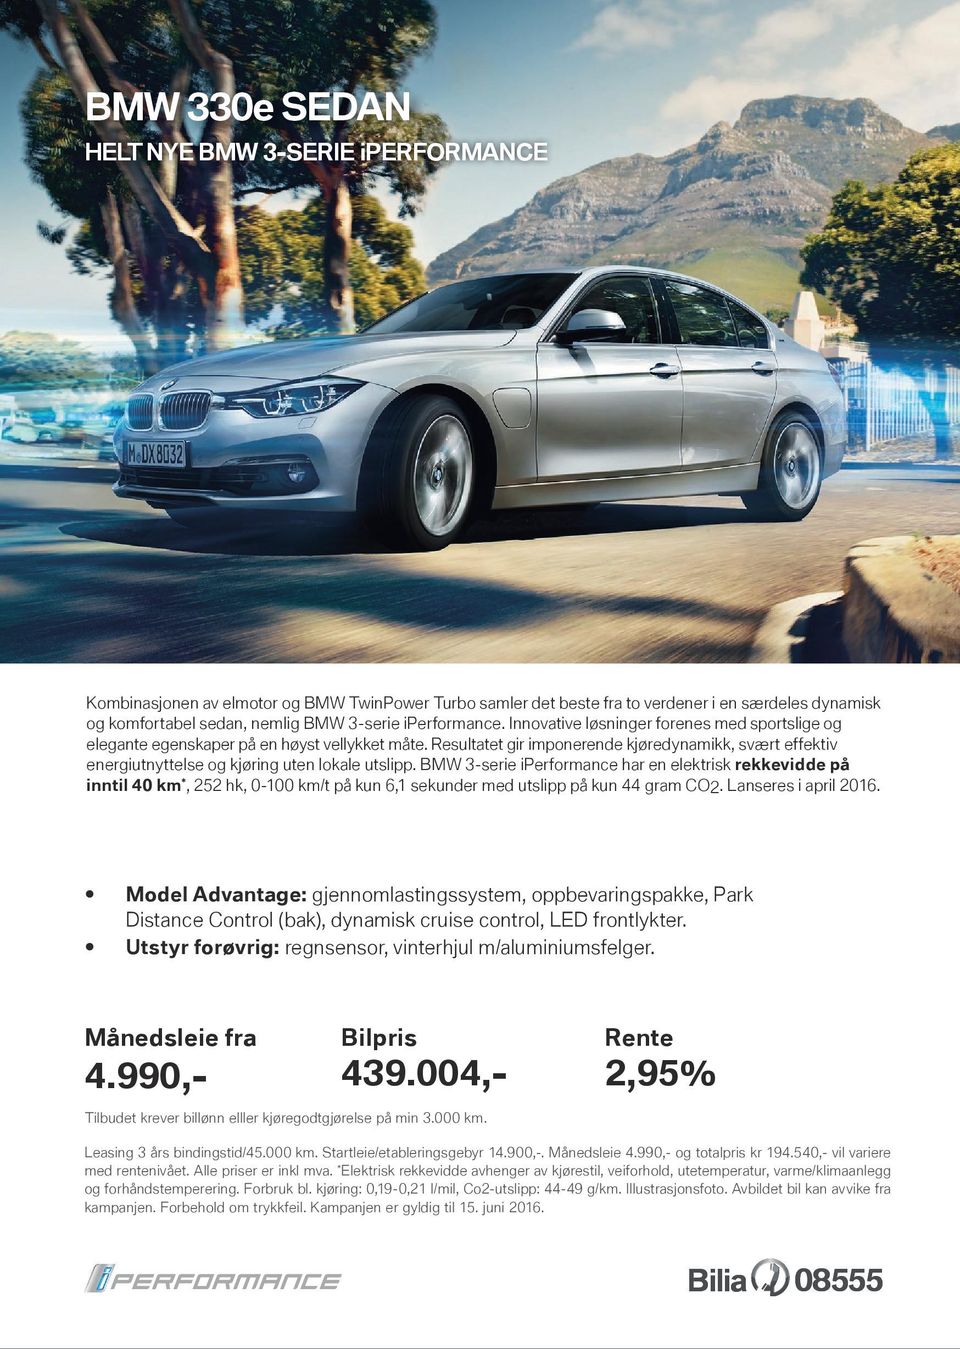 BMW 3-serie iperformance har en elektrisk rekkevidde på inntil 40 km *, 252 hk, 0-100 km/t på kun 6,1 sekunder med utslipp på kun 44 gram CO2. Lanseres i april 2016.